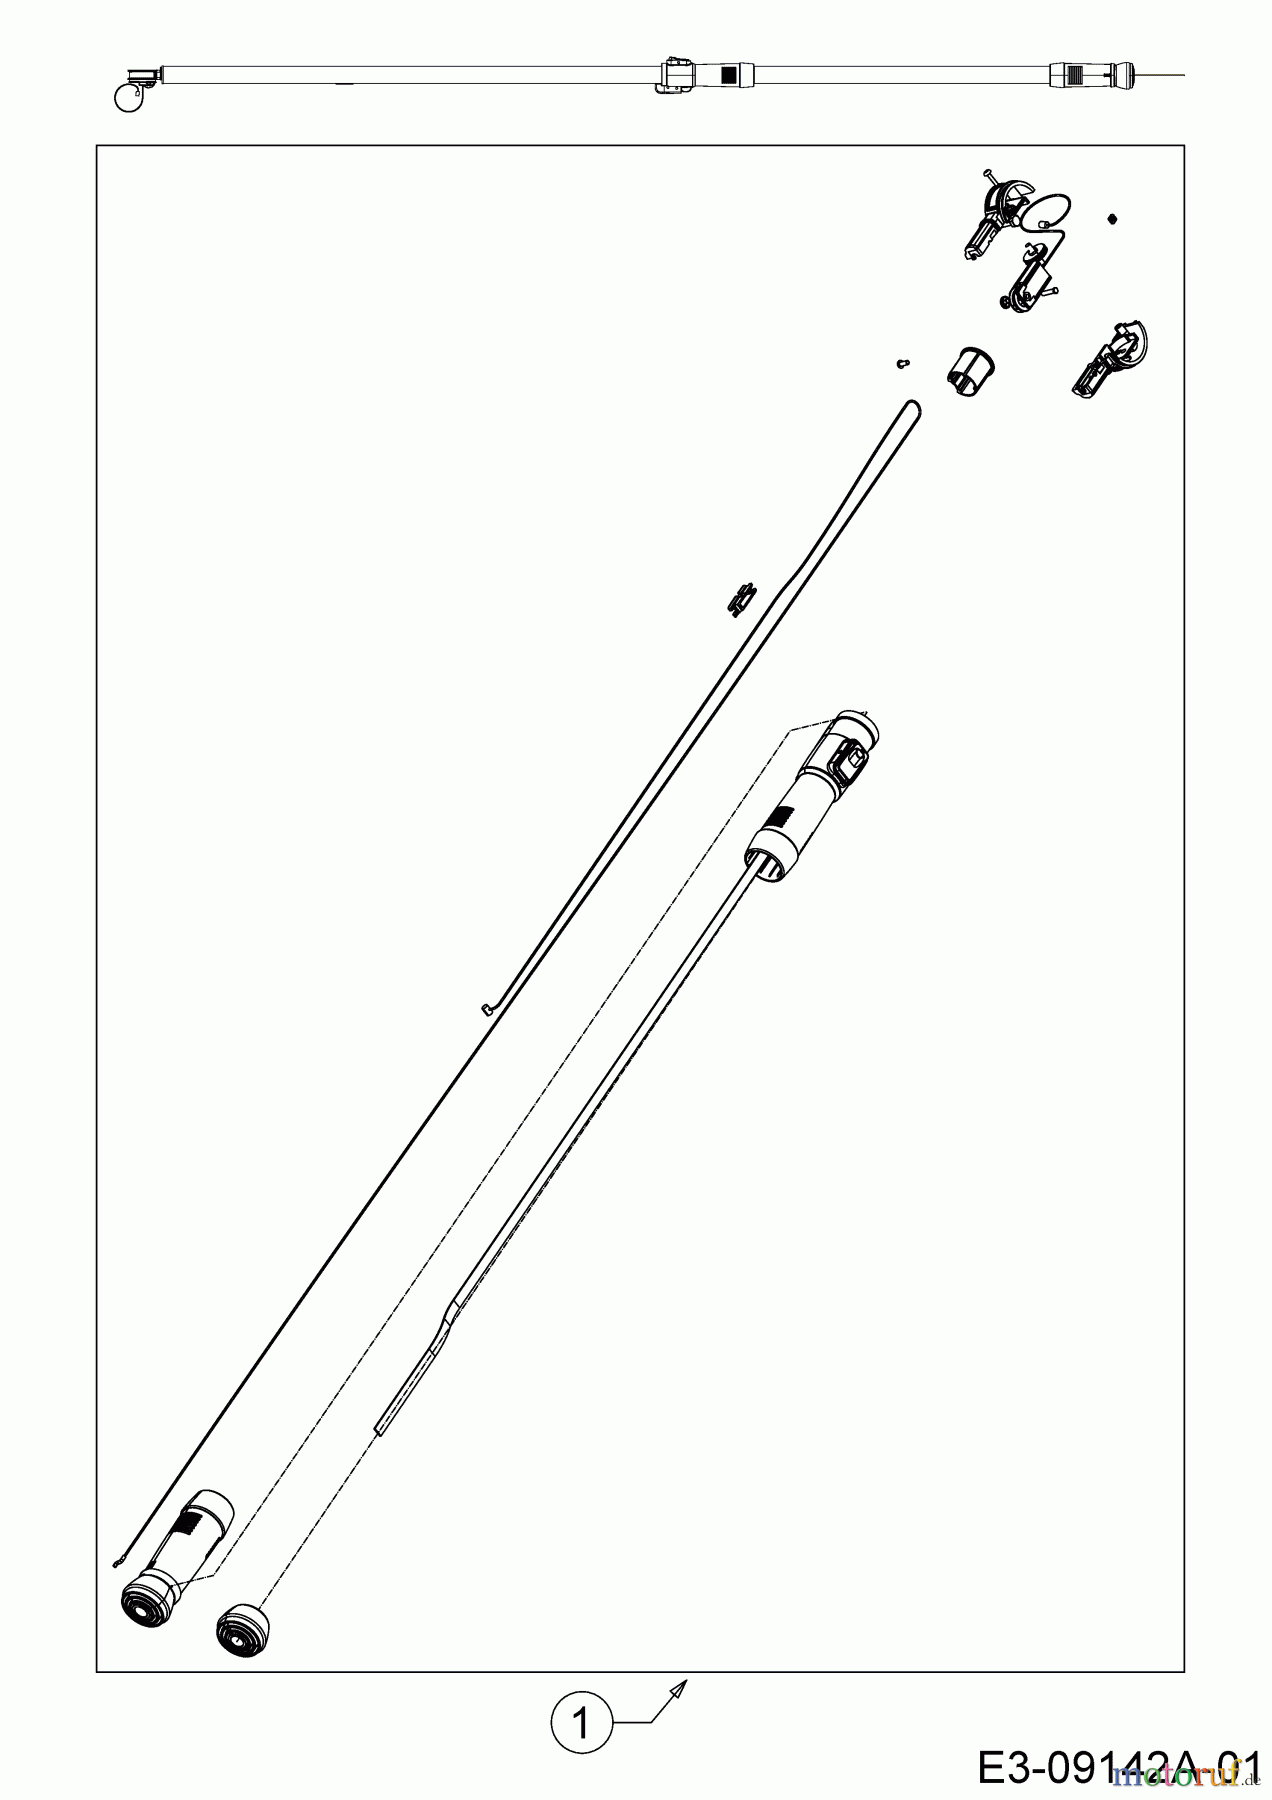  Wolf-Garten Astscheren (Zweischneidig) PDC RR 400 T 73ACA002650  (2015) REPARATURSATZ TELESKOPSTIEL